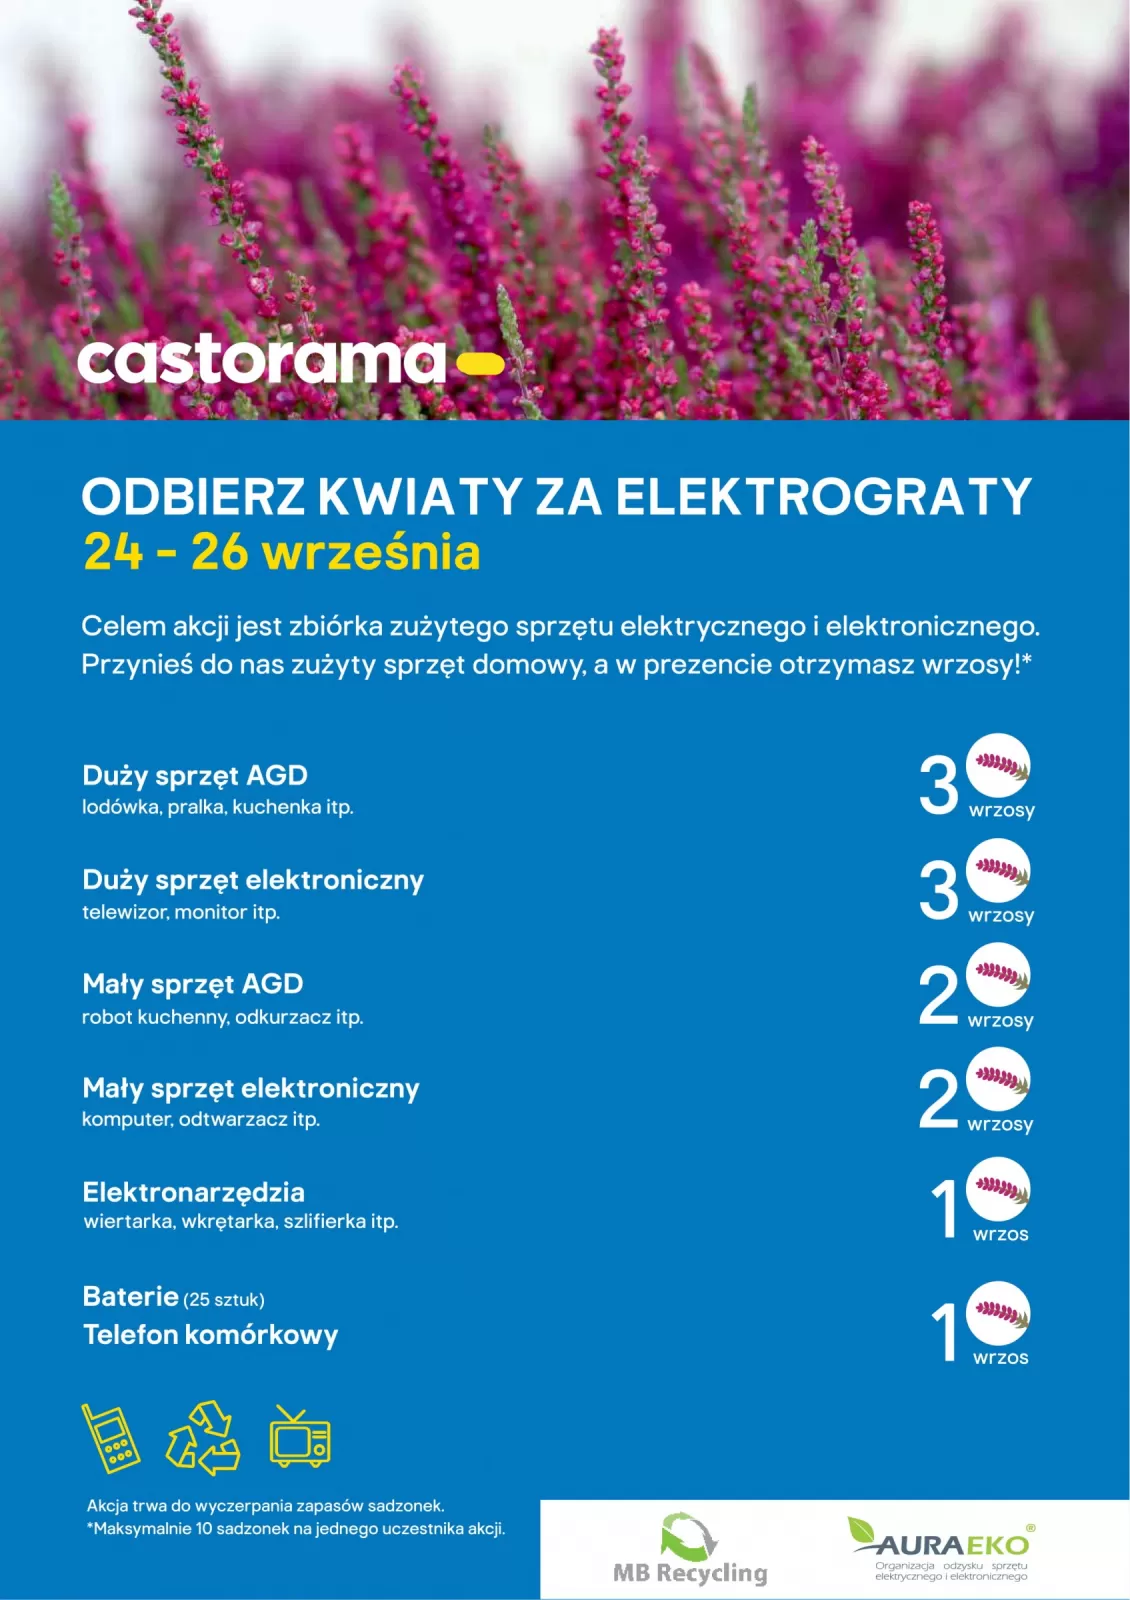 Kwiaty Za Elektrograty 2020 Castorama Auraeko Auraeko Organizacja Odzysku Sprzetu Elektrycznego I Elektronicznego